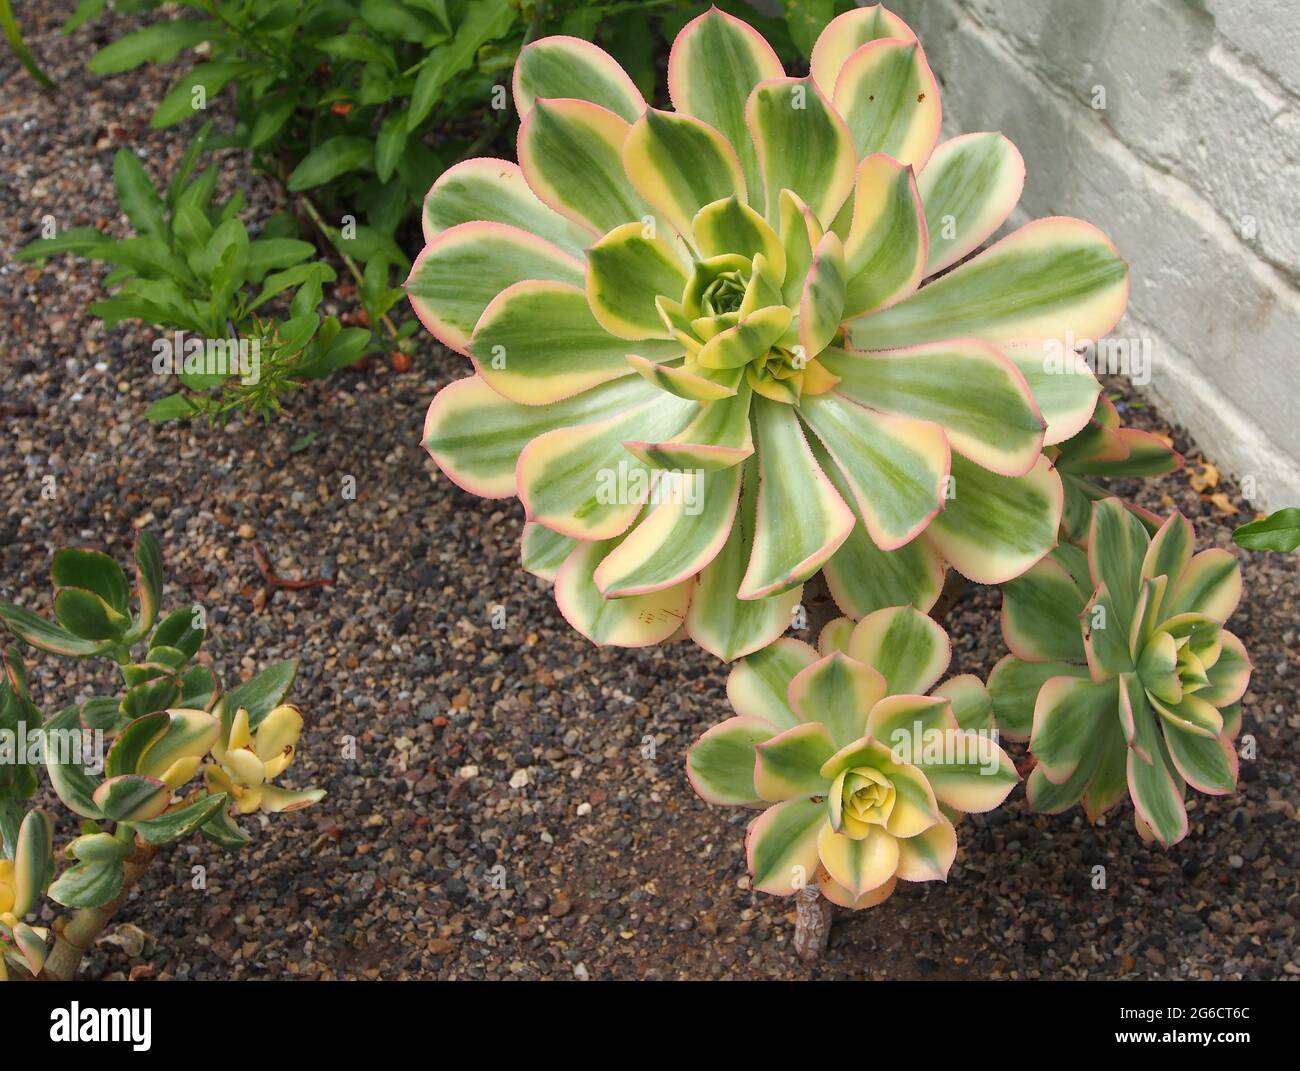 Aeonium Arboreum - eine Sukulente, die für trockene und trockene Bedingungen geeignet ist. Wächst im Kiesbett des Gewächshauses bei RHS Bridgewater. Stockfoto